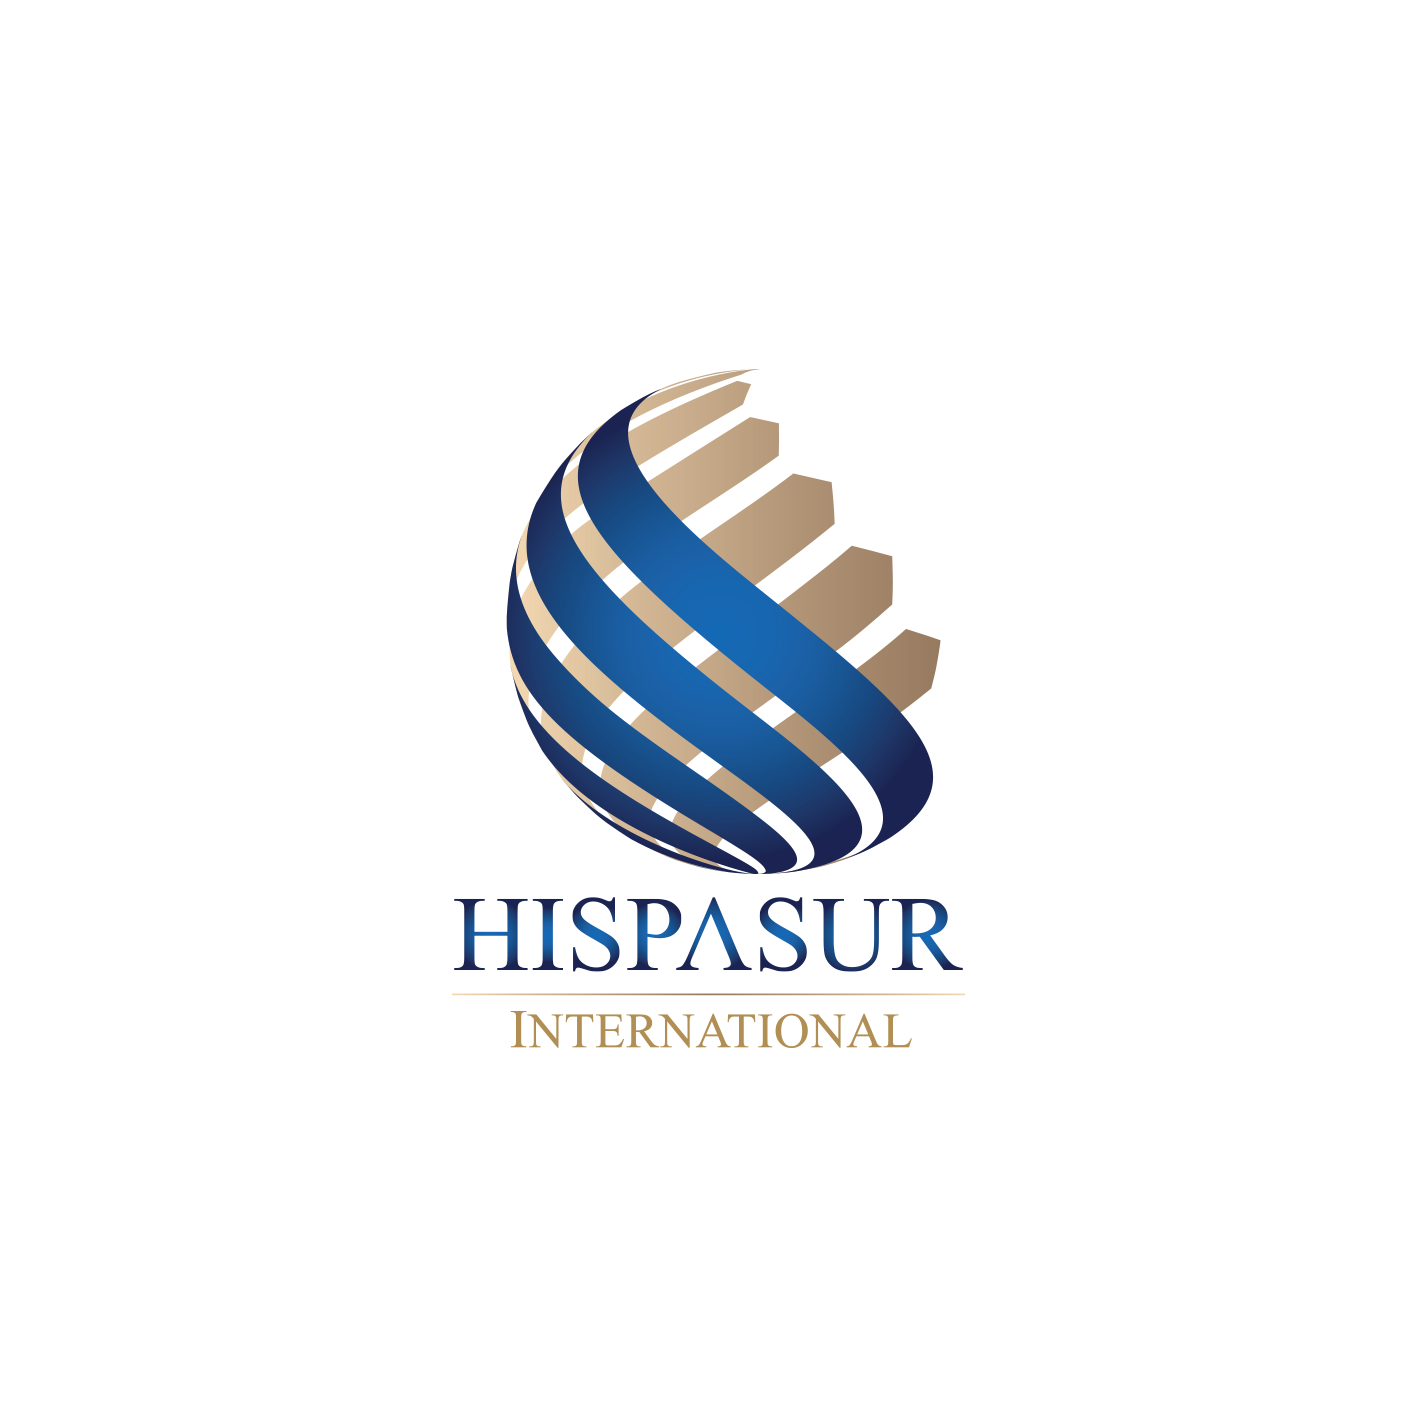 Hispasur international logo png